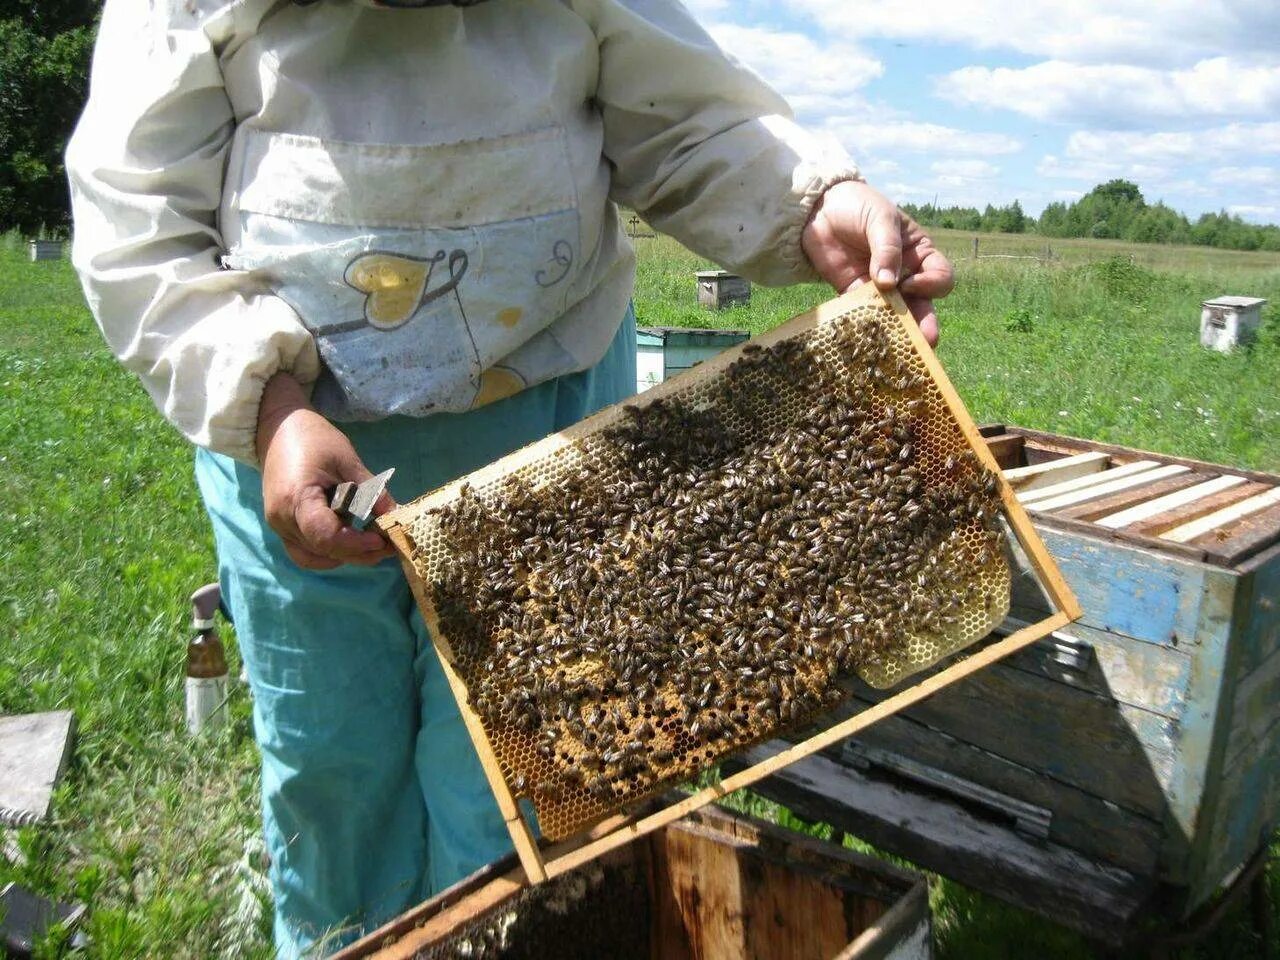 Улей для пчел. Пчелы в улье. Рамки для пчел. Пчелиный улей и пчеловод.